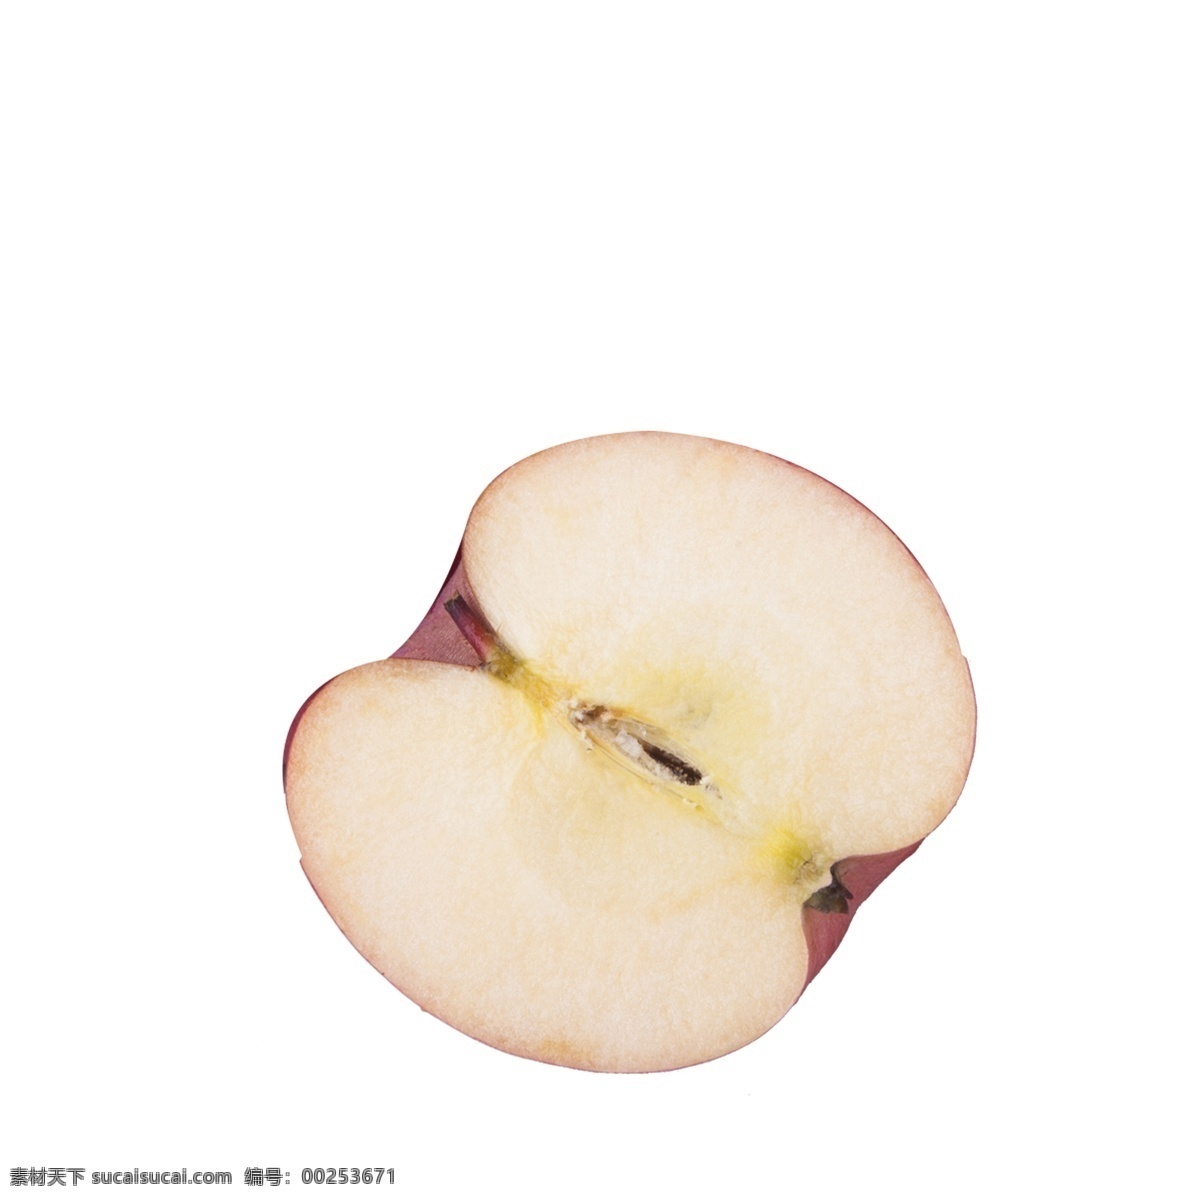 切开 苹果 免 抠 图 水果 红通通 美味的苹果 生态水果 植物果实 切开的苹果 红色的苹果 免抠图